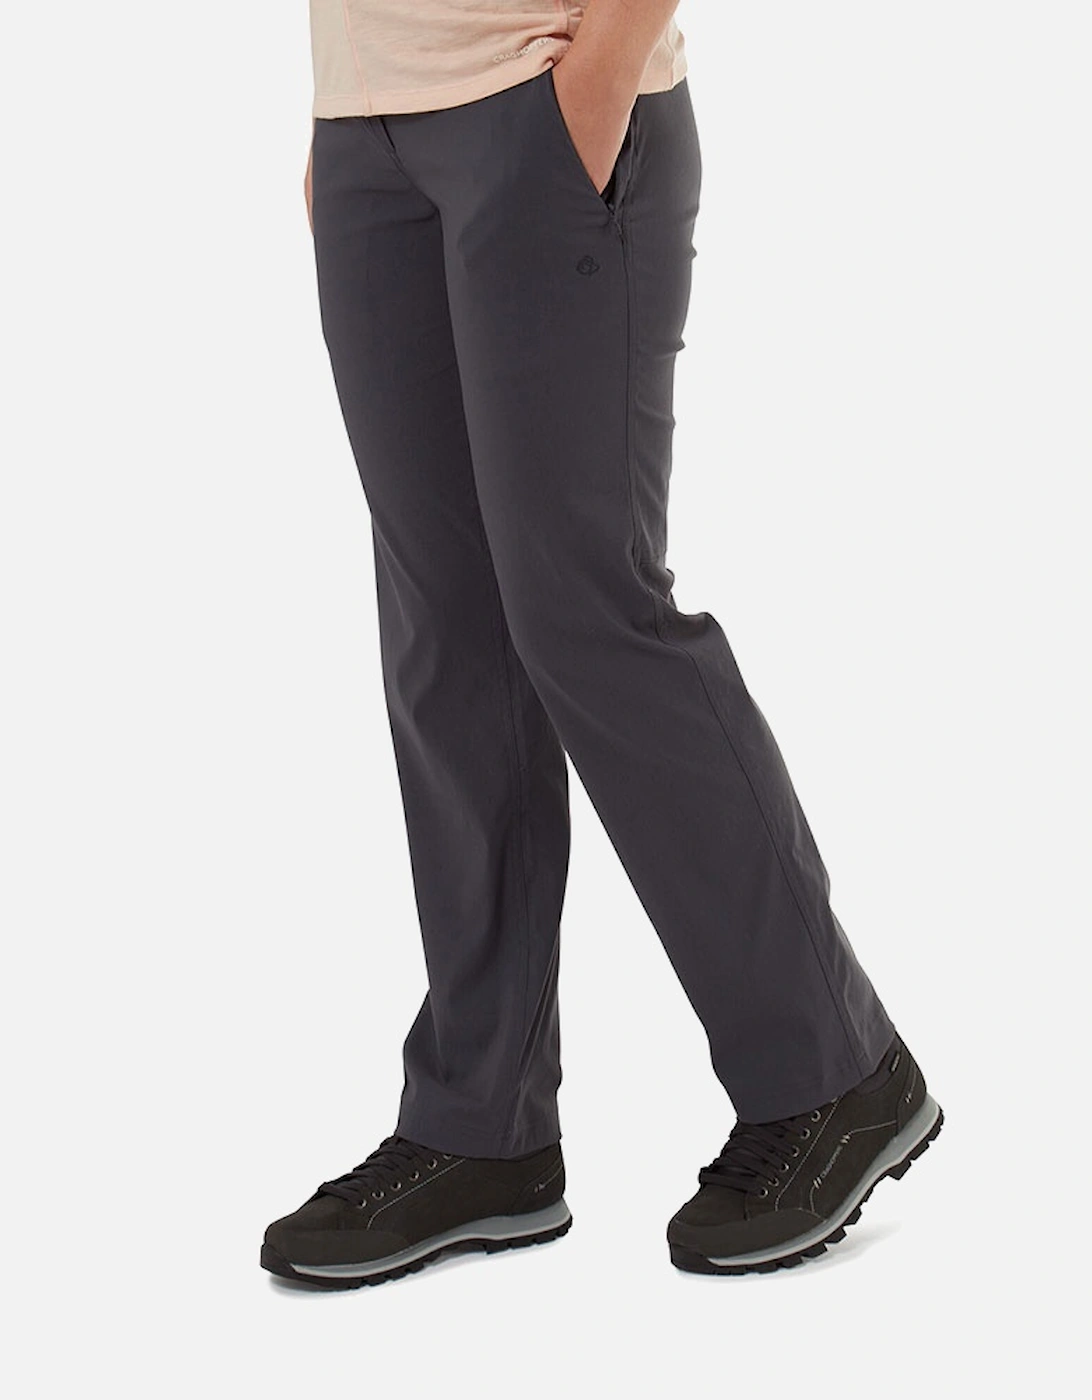 Womens Kiwi II Pro Smart Dry Walking Trousers, 7 of 6